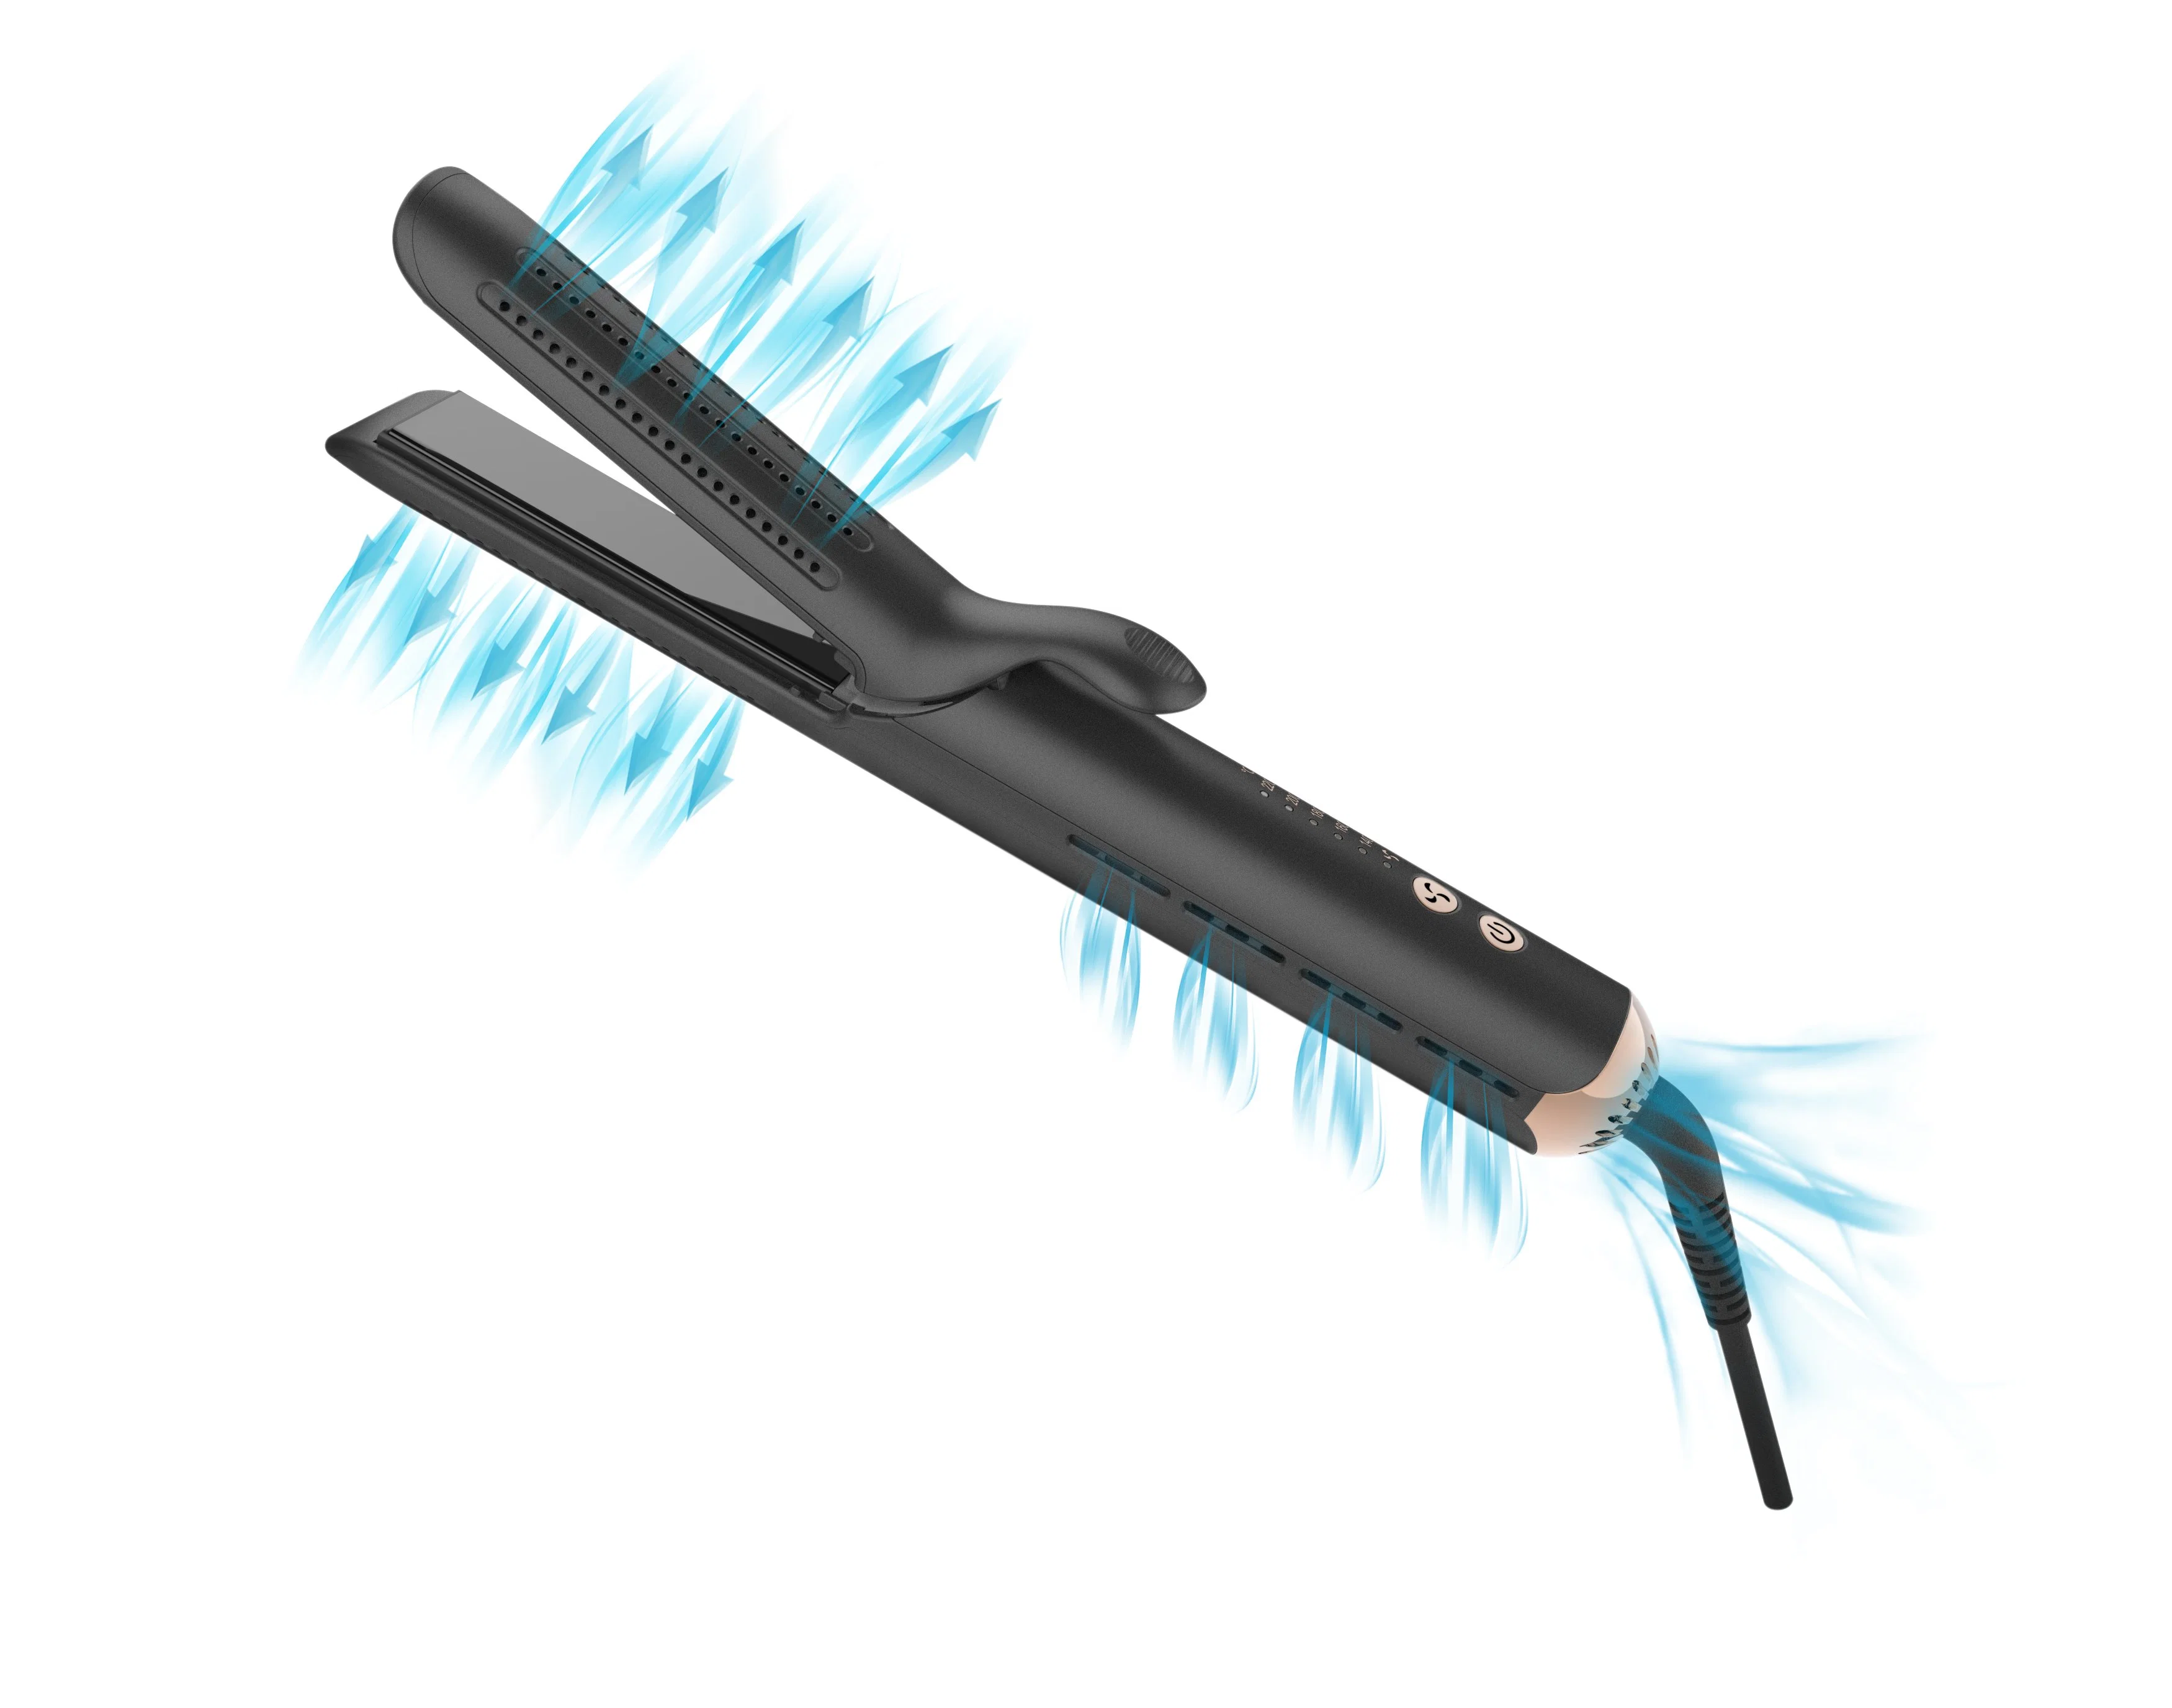 O ar de refrigeração Custom Aquecimento rápido alisador de cabelo Curl ferros plana para uso doméstico